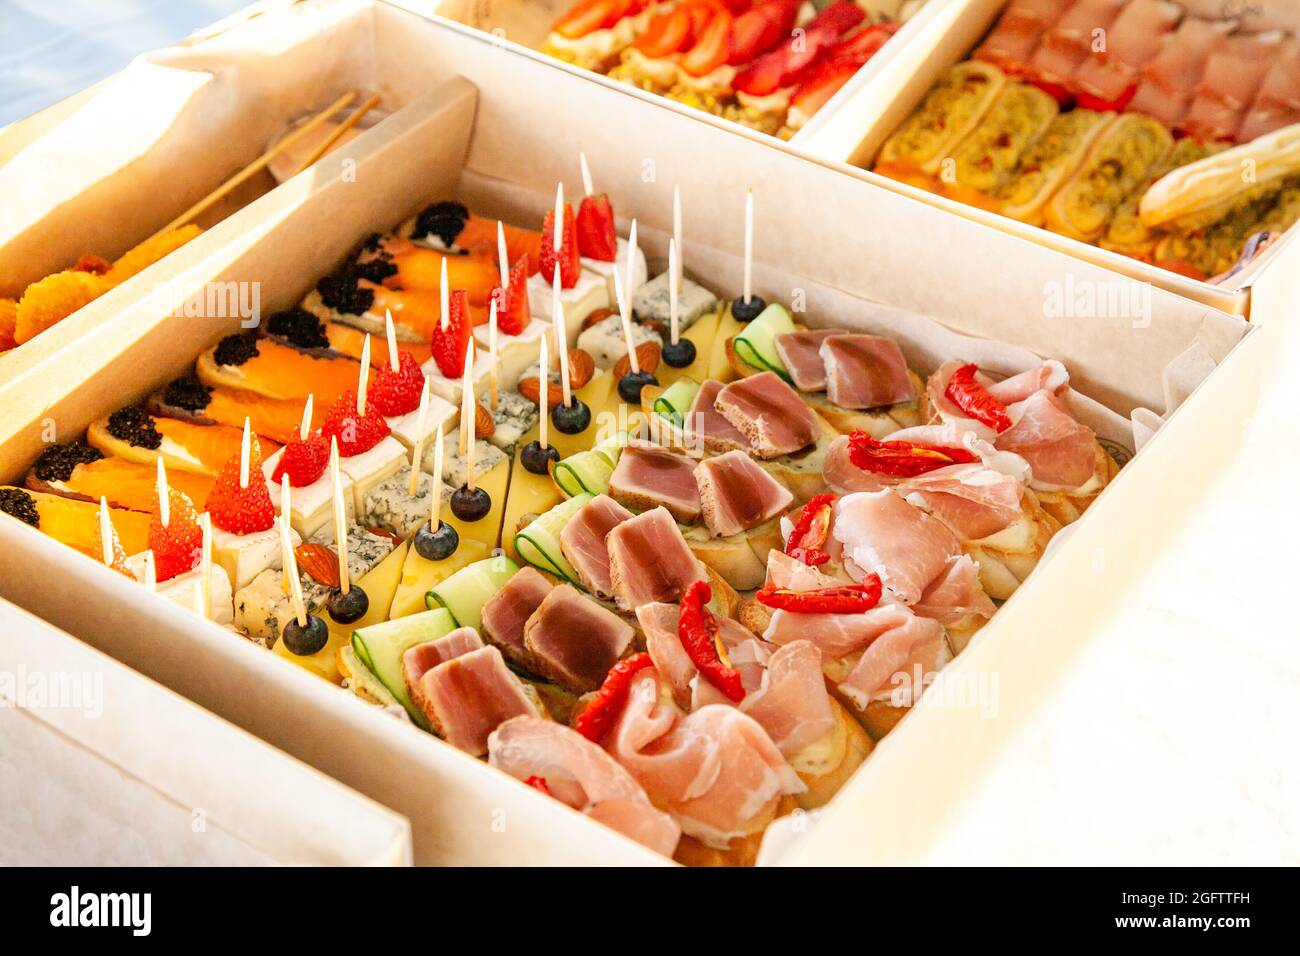 Gourmet-Snacks in Pappkarton mit Sandwiches, Eklairs, Bruschetta mit Aufschnitt, Käse und Meeresfrüchten für Catering-Buffet und Party. Stockfoto